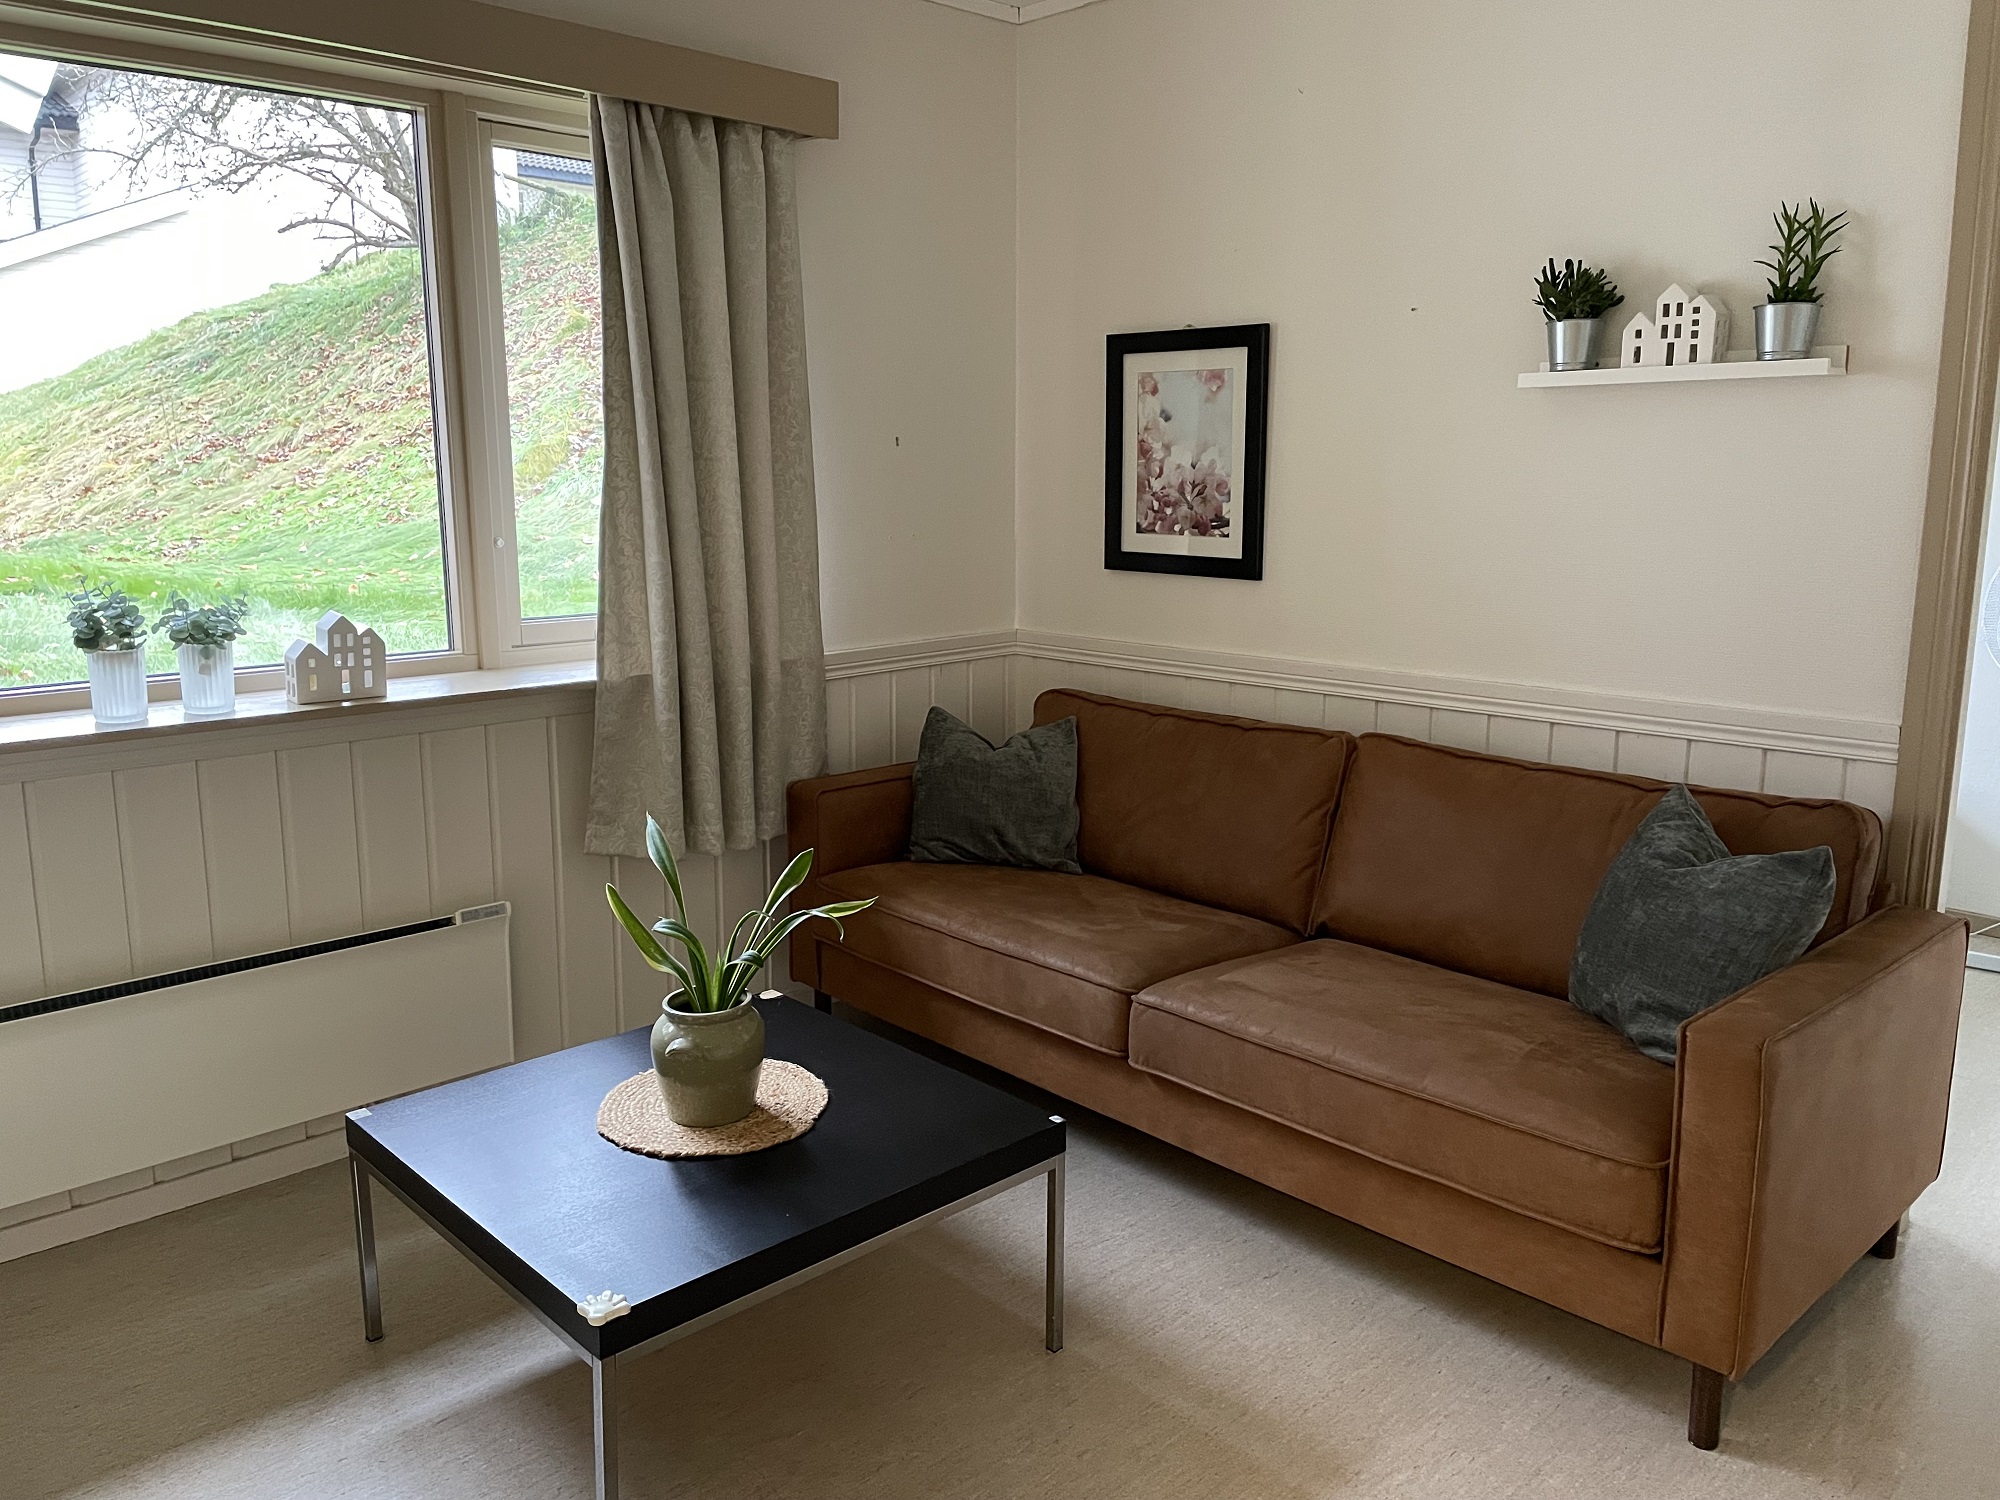 Del av stue med brun sofa, bilder og bord med plante